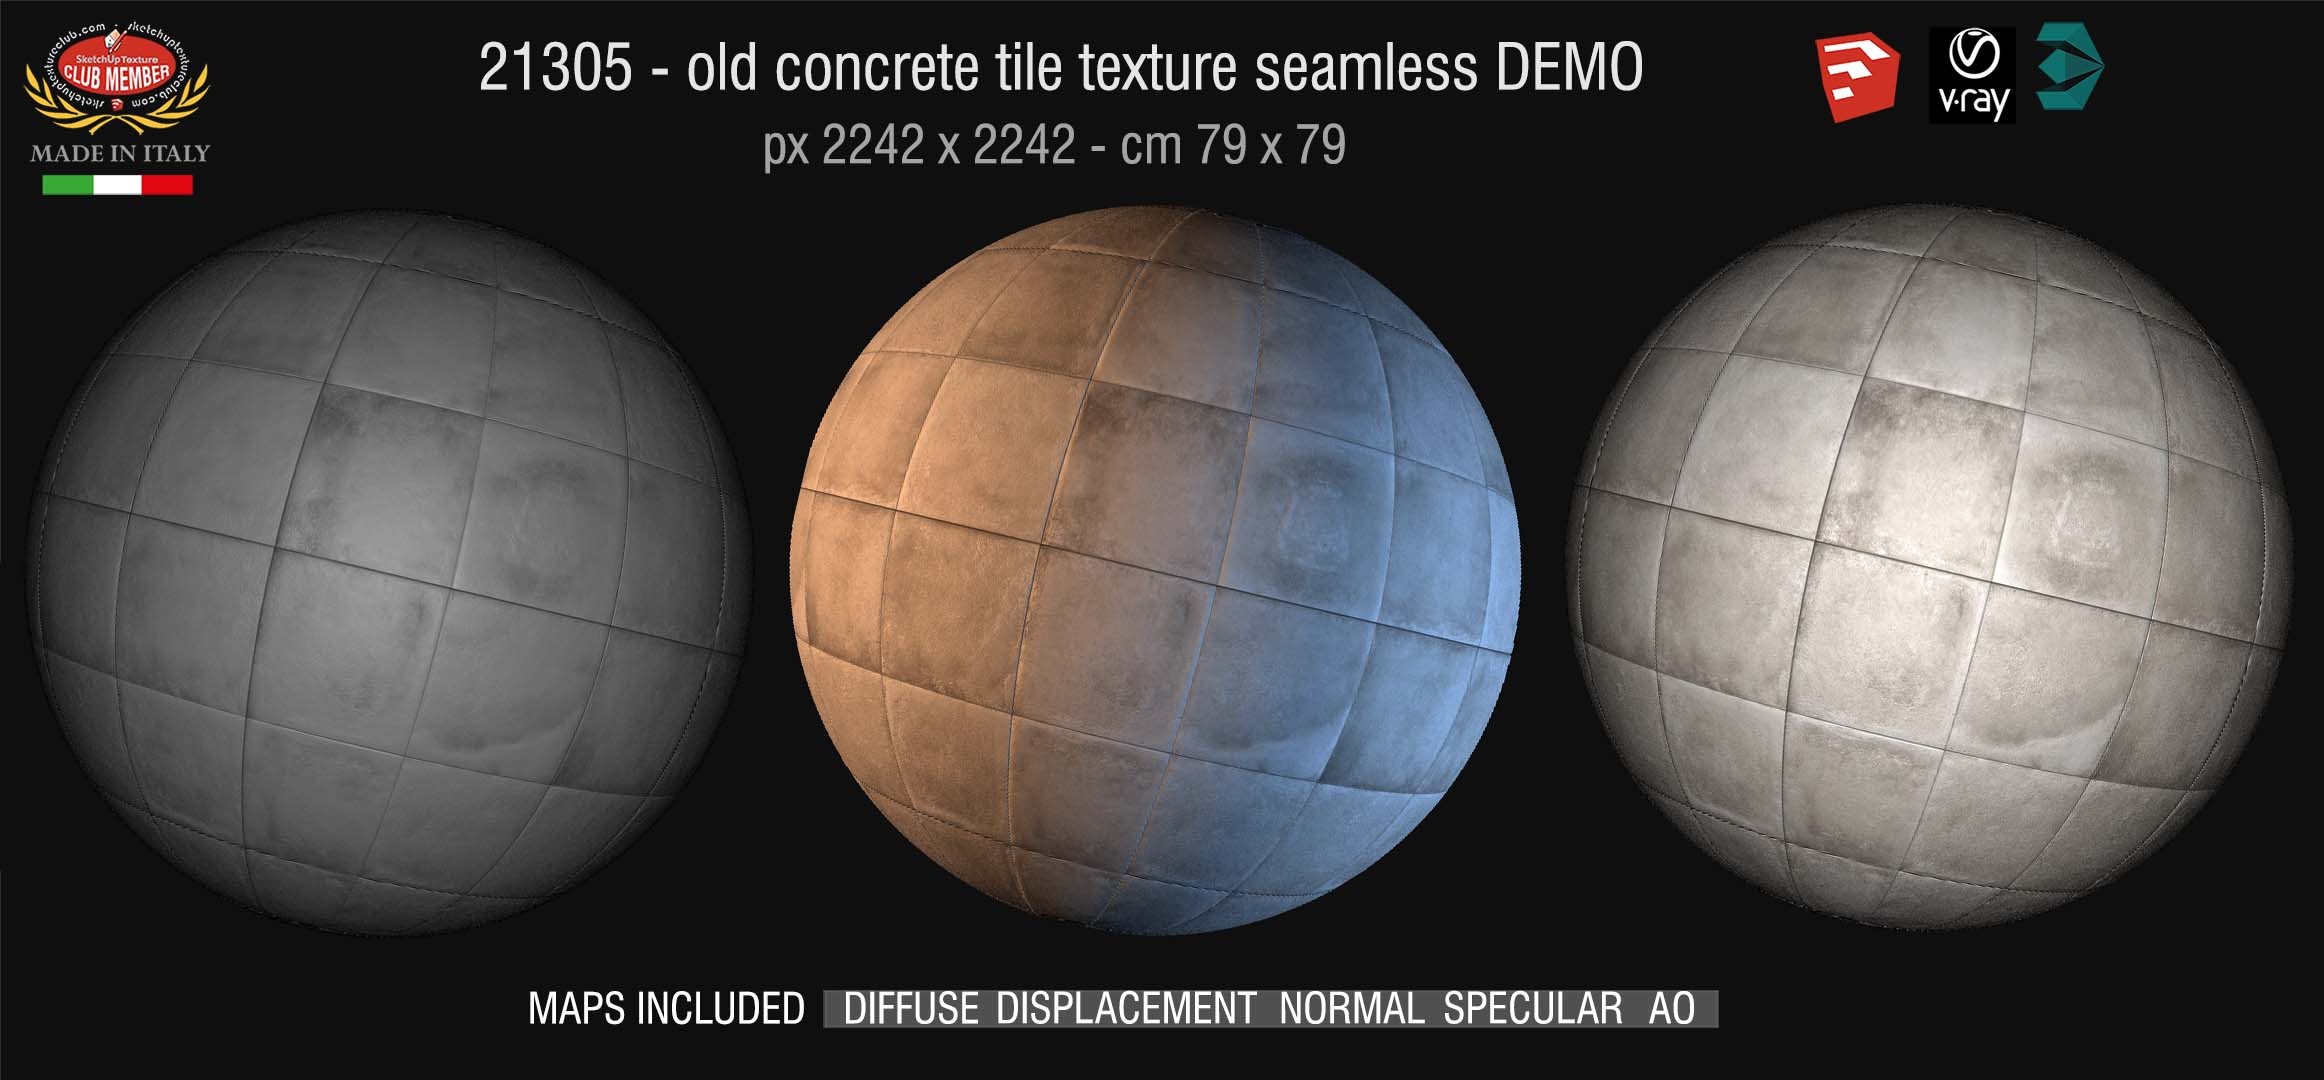 21305 Old concrete tile texture + maps DEMO